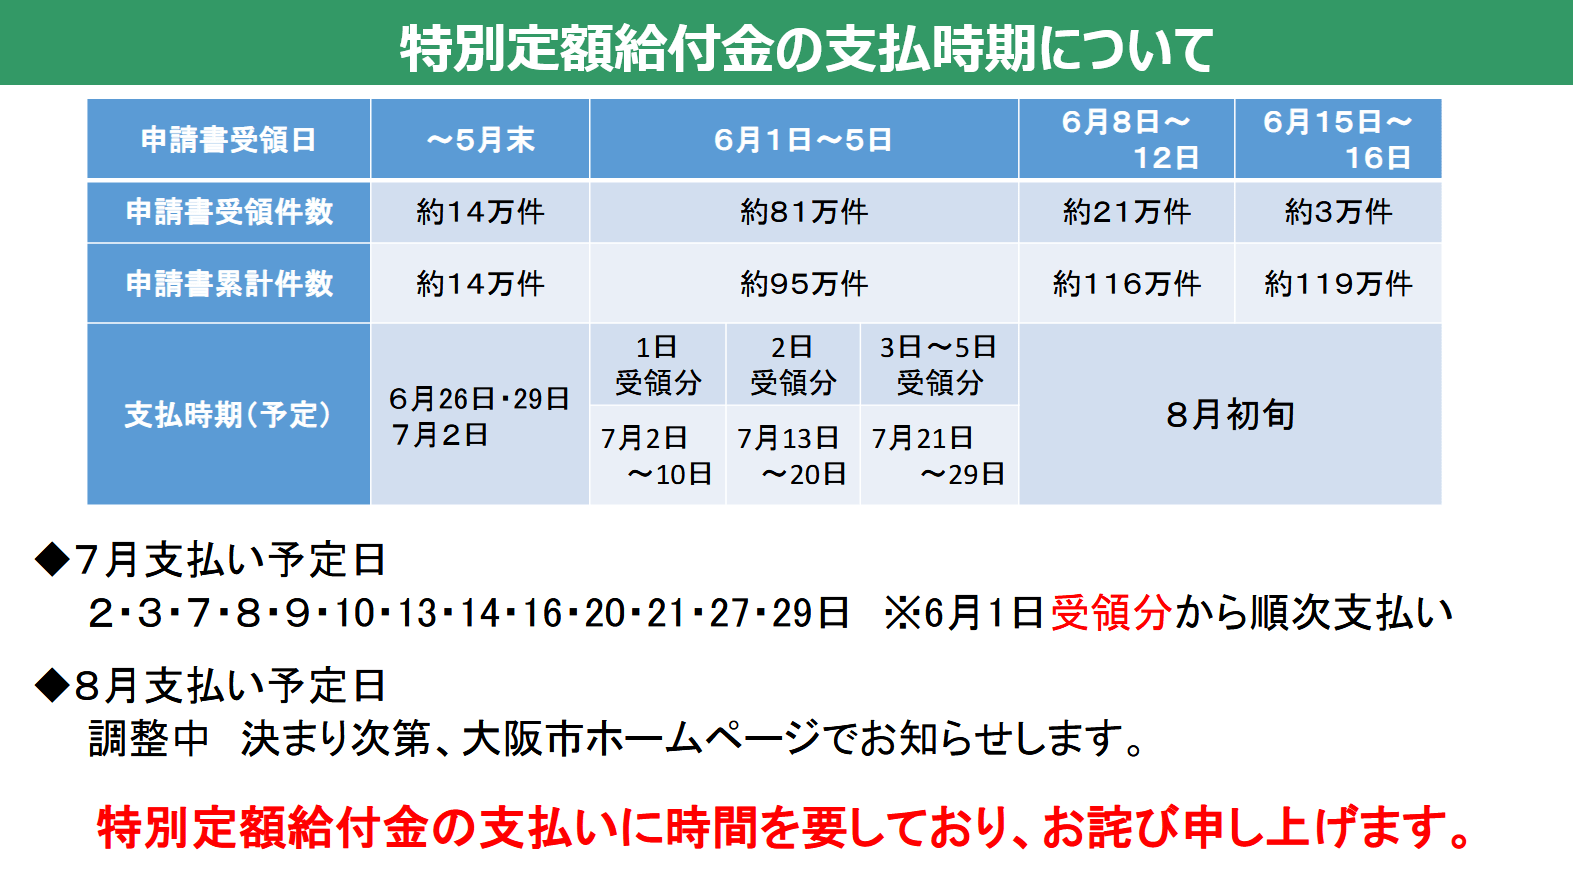 【10万円・6/19追記】6/3までの申請分は7月中旬までに振込予定、それ以降は7月末～8月